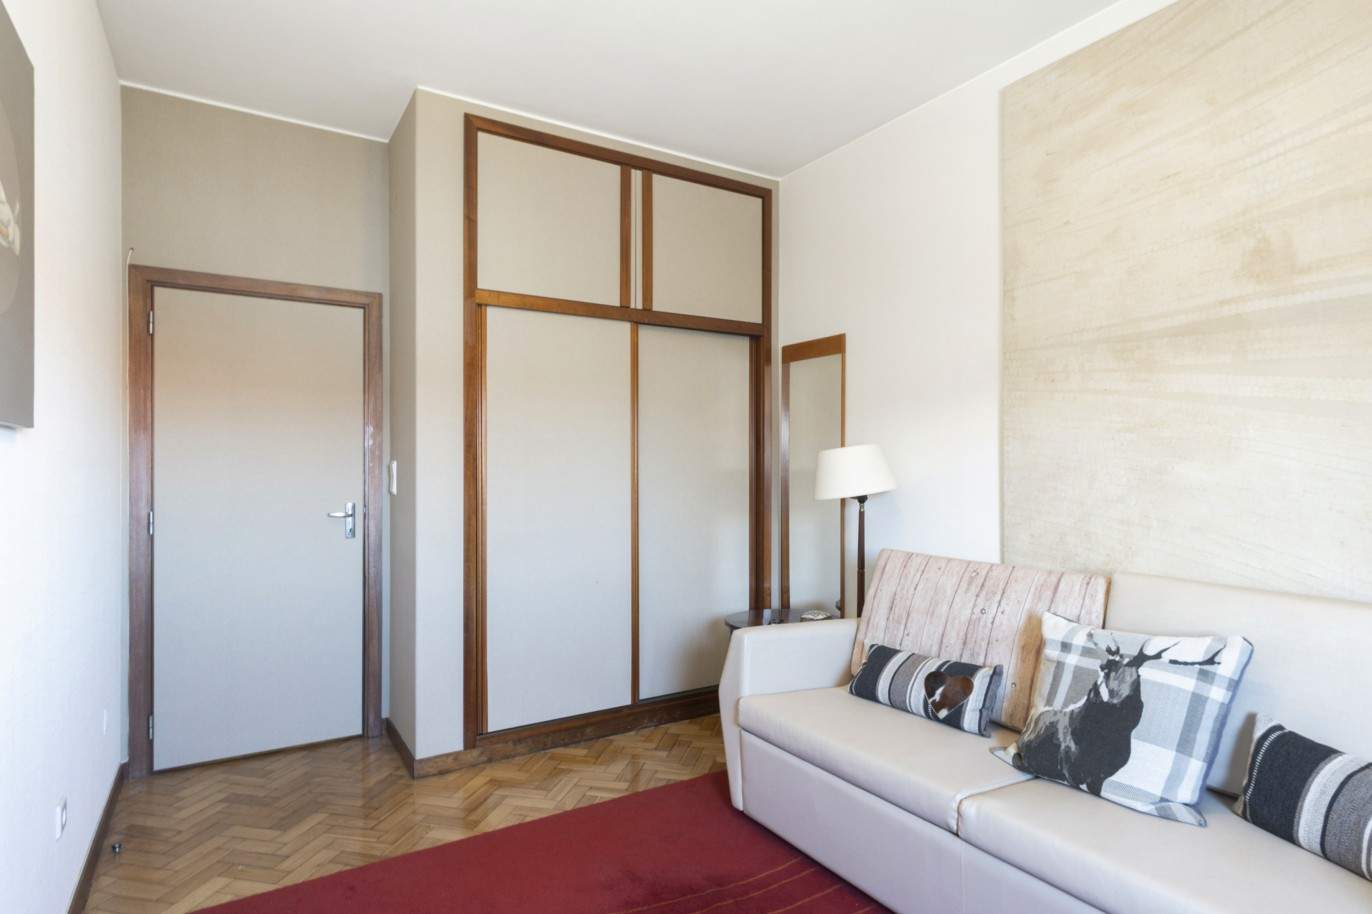 Piso dúplex de 3+1 dormitorios con balcón, en venta, cerca del Centro Universitario, Oporto, Portugal_212478